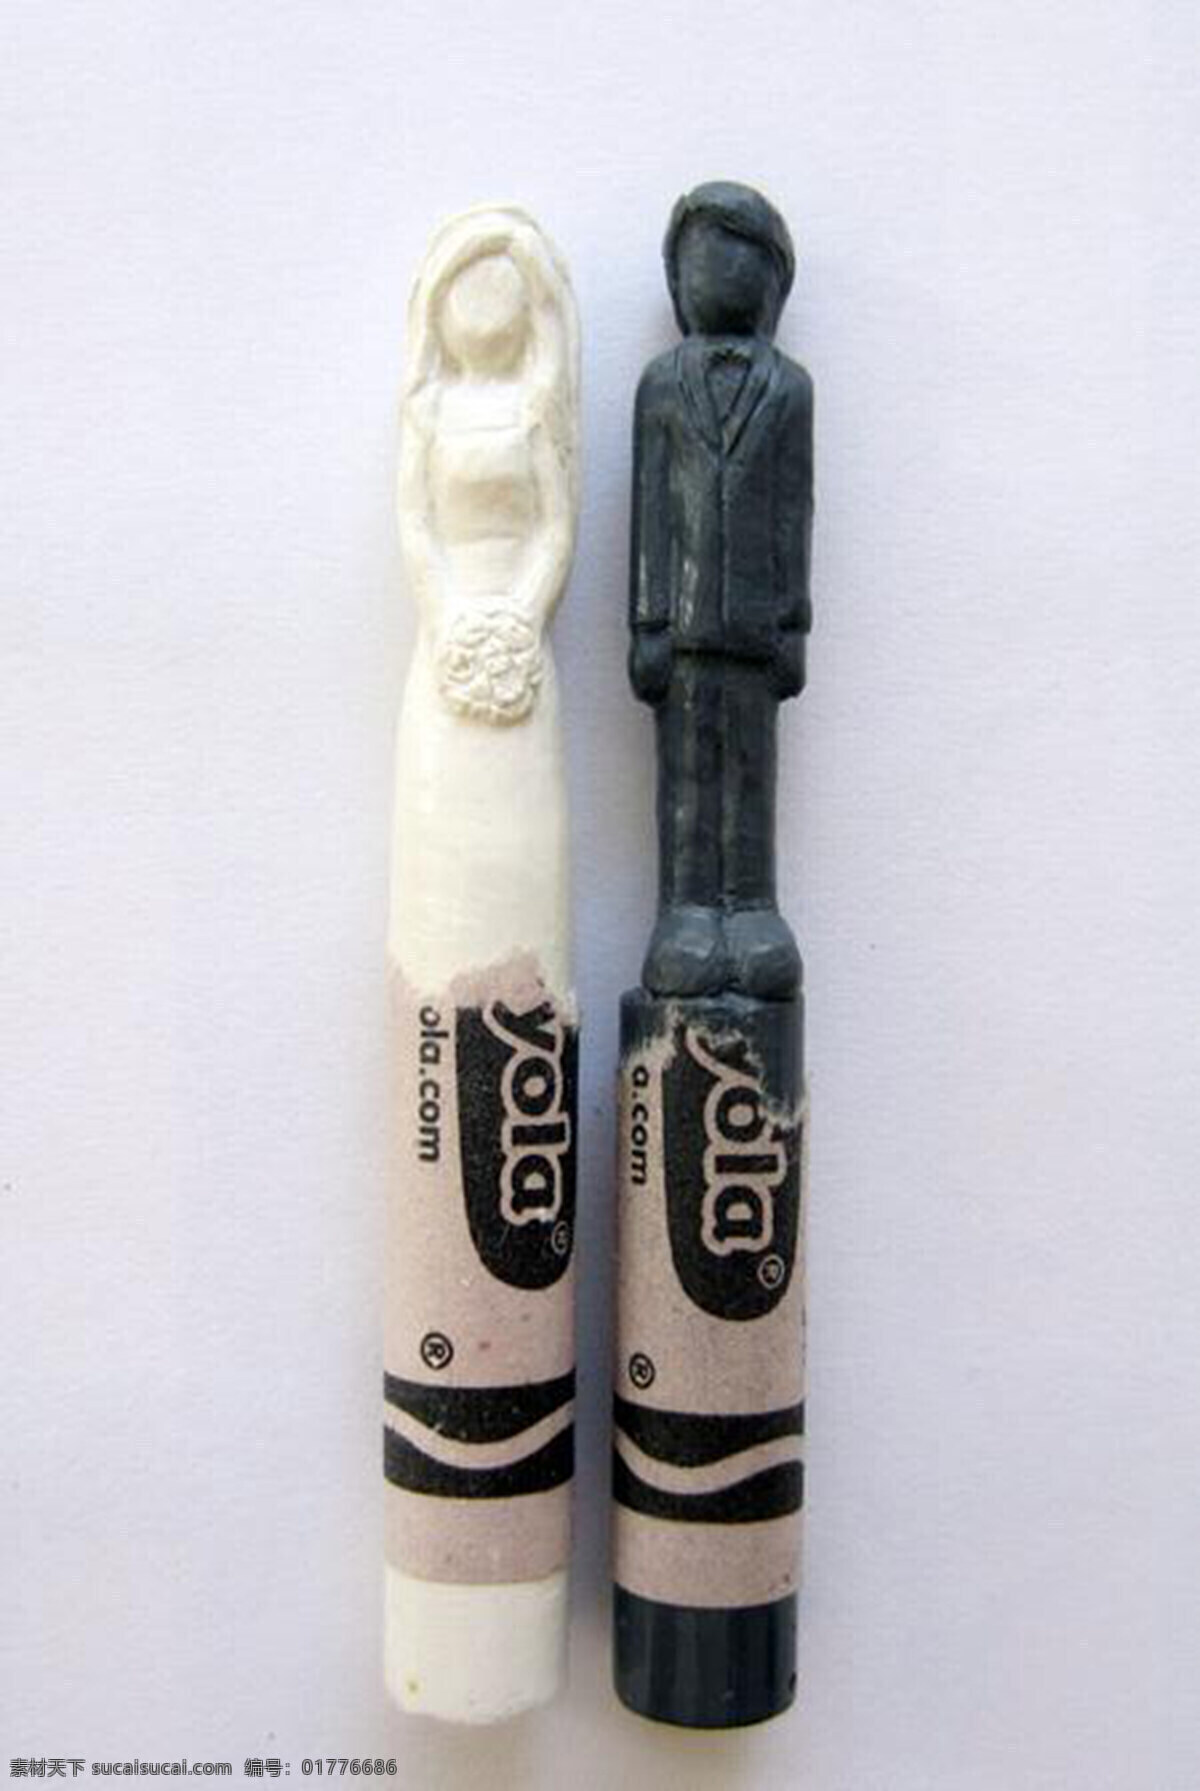 漂亮 蜡笔 雕刻 产品设计 创意 工业设计 简约 灵感 饰品 玩具